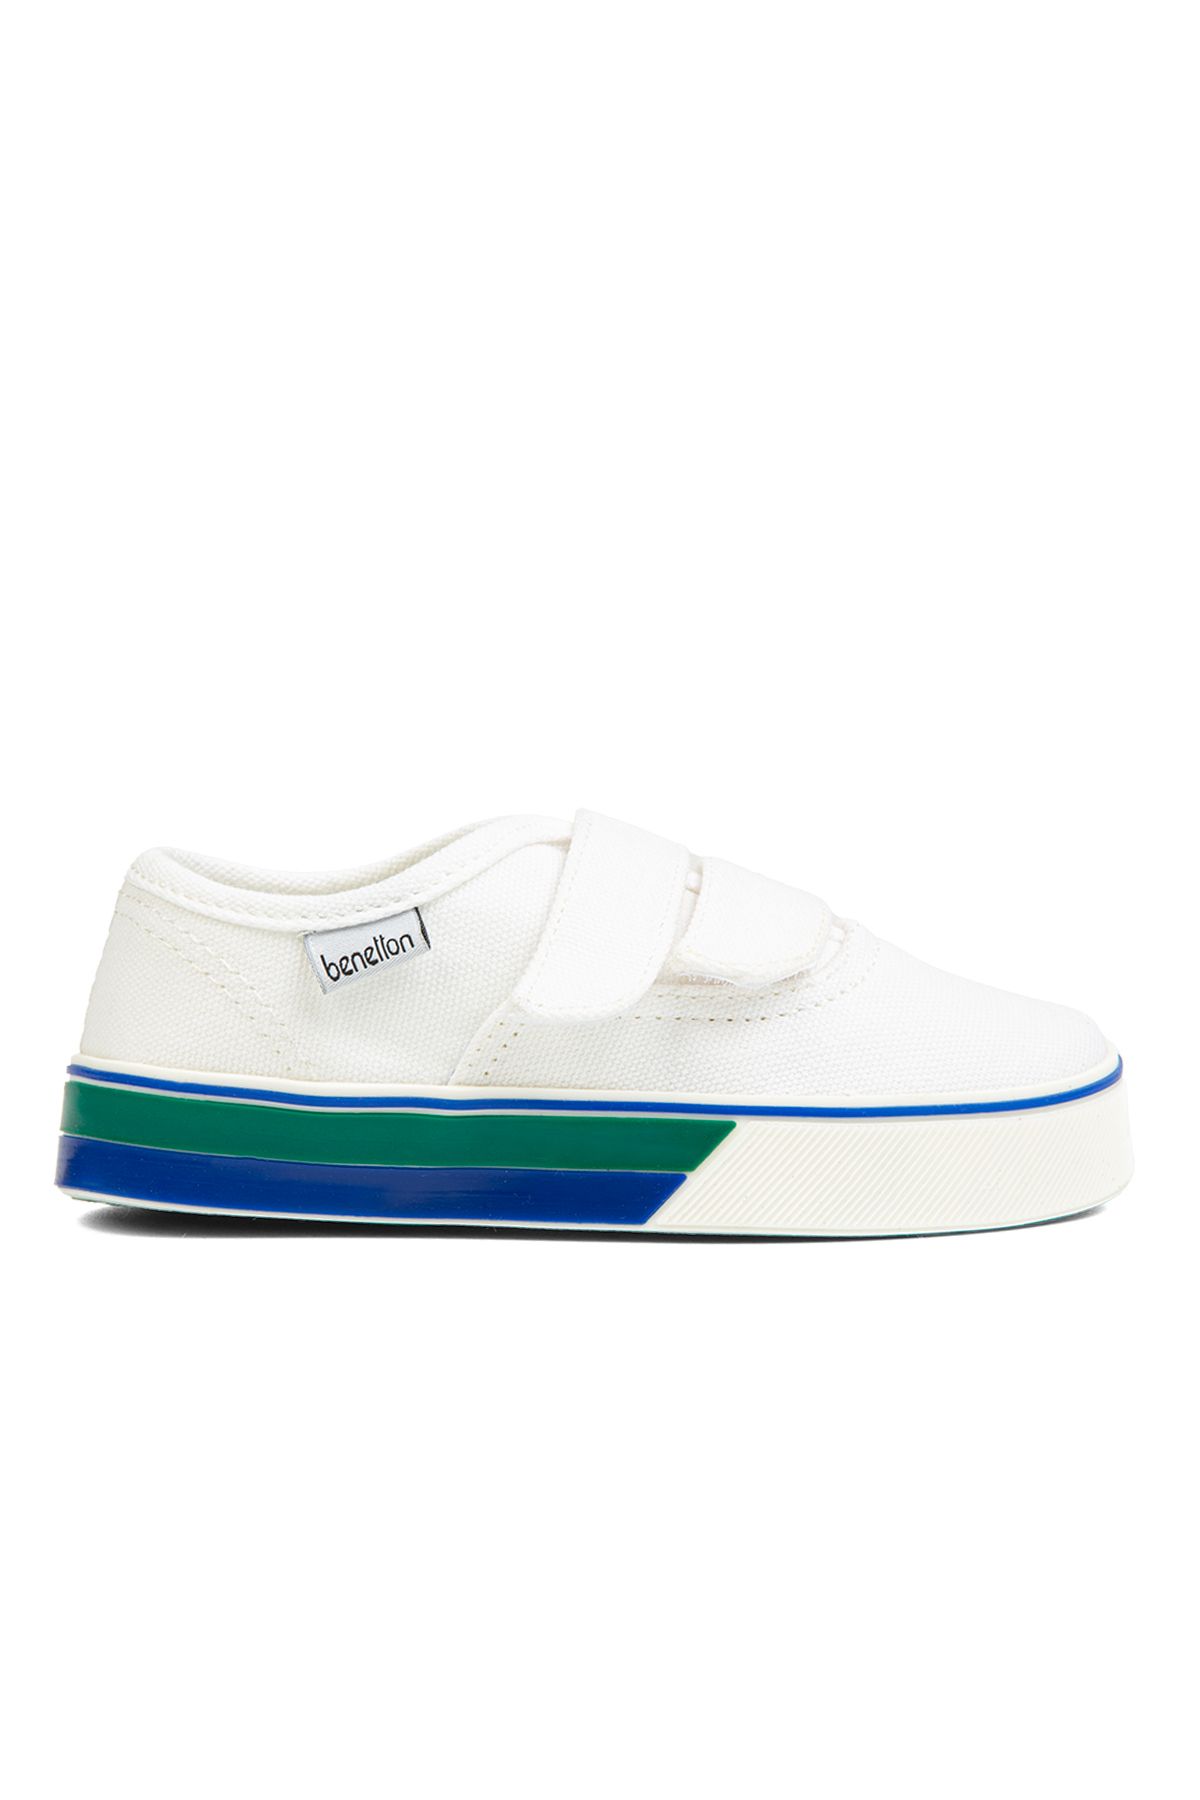 Benetton Beyaz Kız Çocuk Sneaker BN-30960